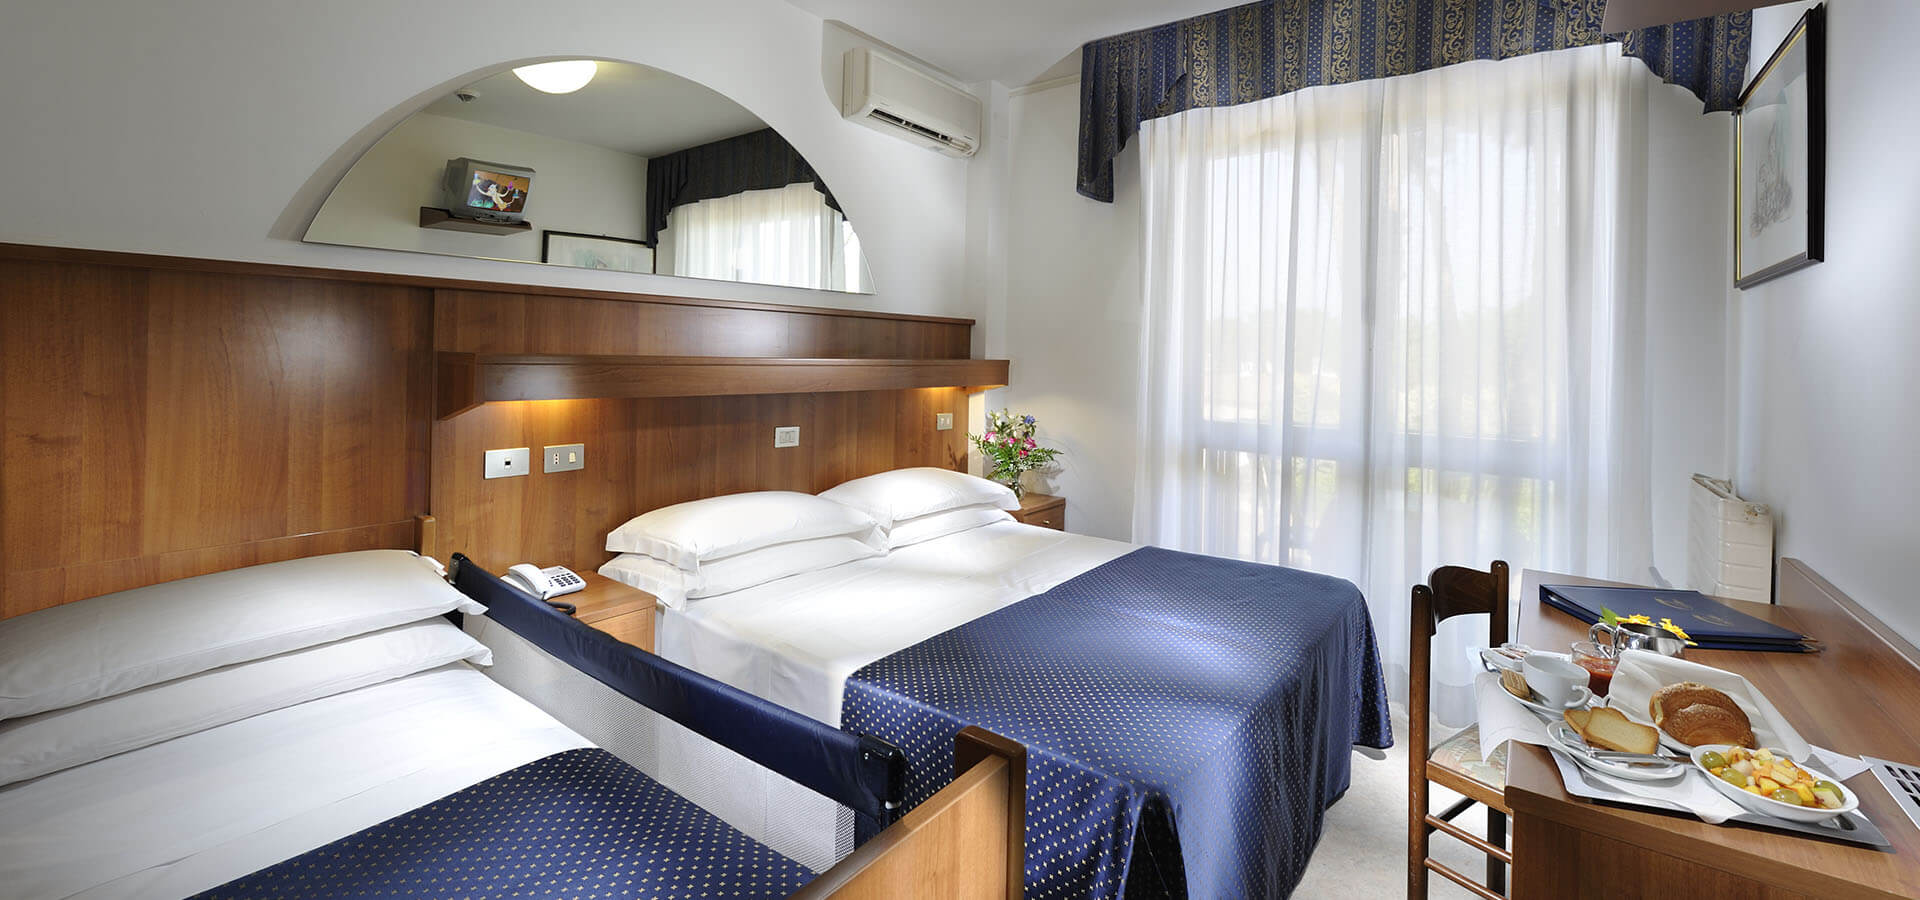 double room in Lignano